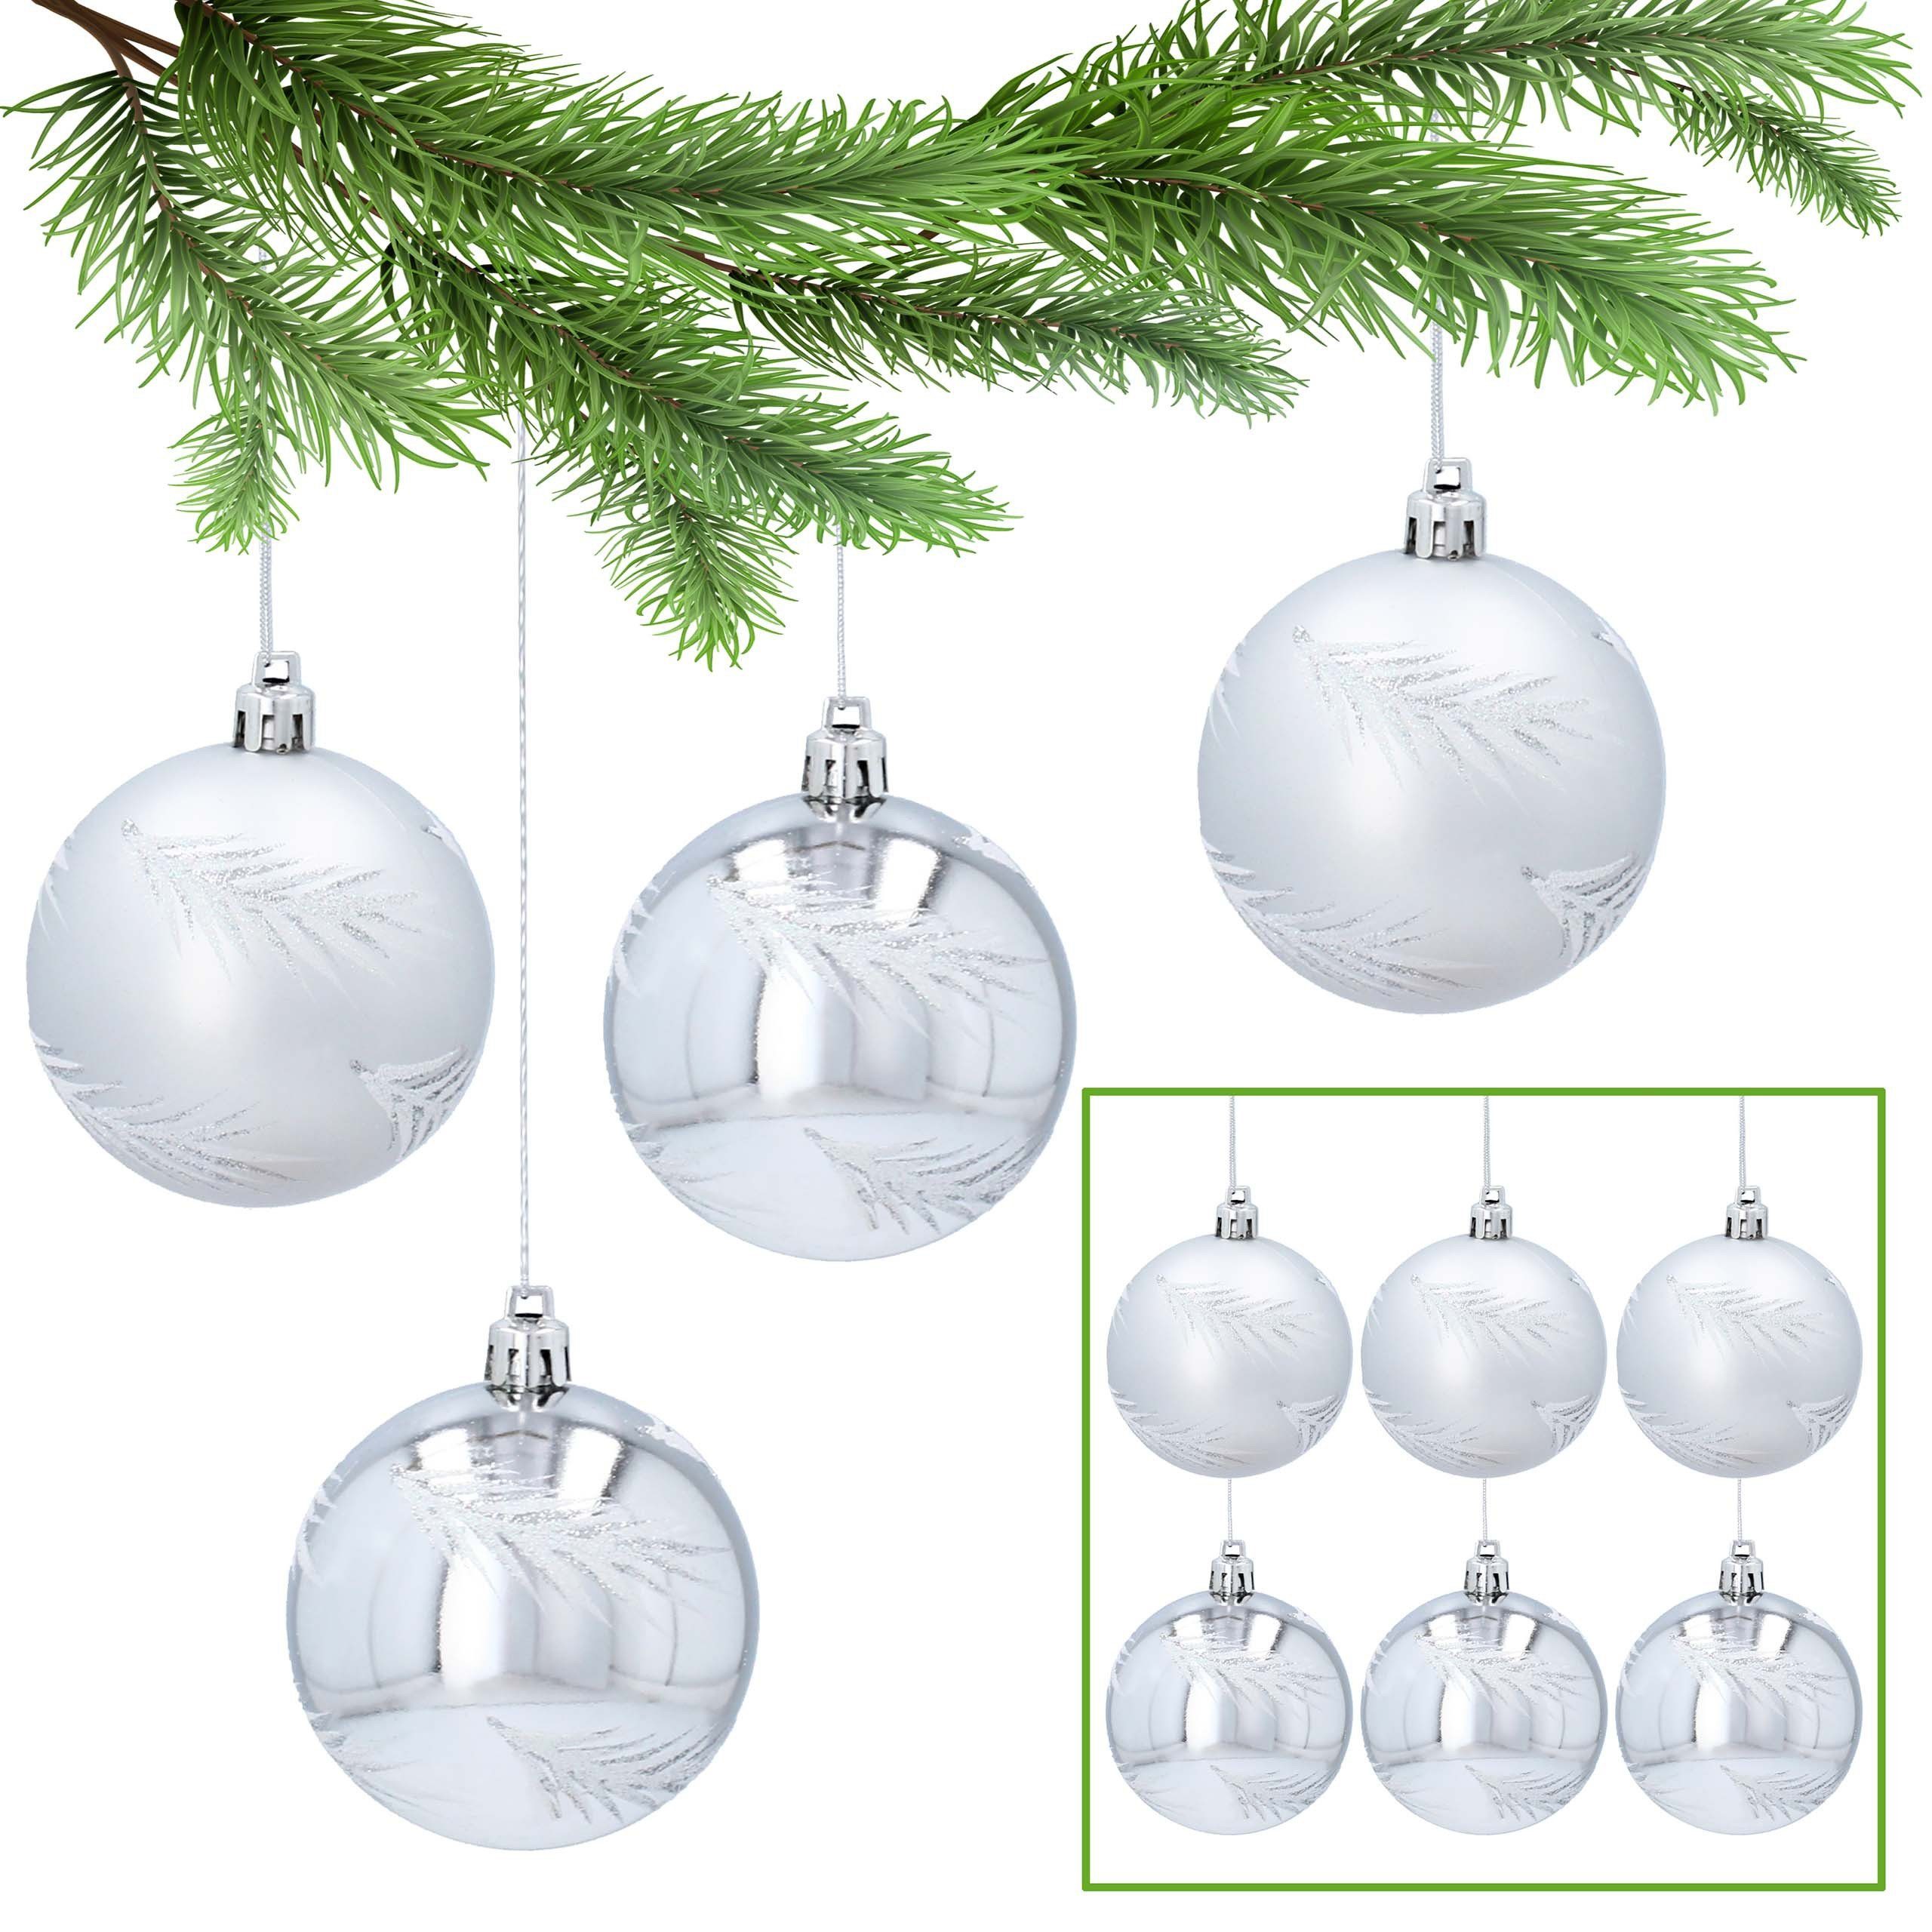 Sarcia.eu Weihnachtsbaumkugel Silberne kugeln im Tannenbaumstil aus Kunststoff 7cm, 6Stück 1Pack